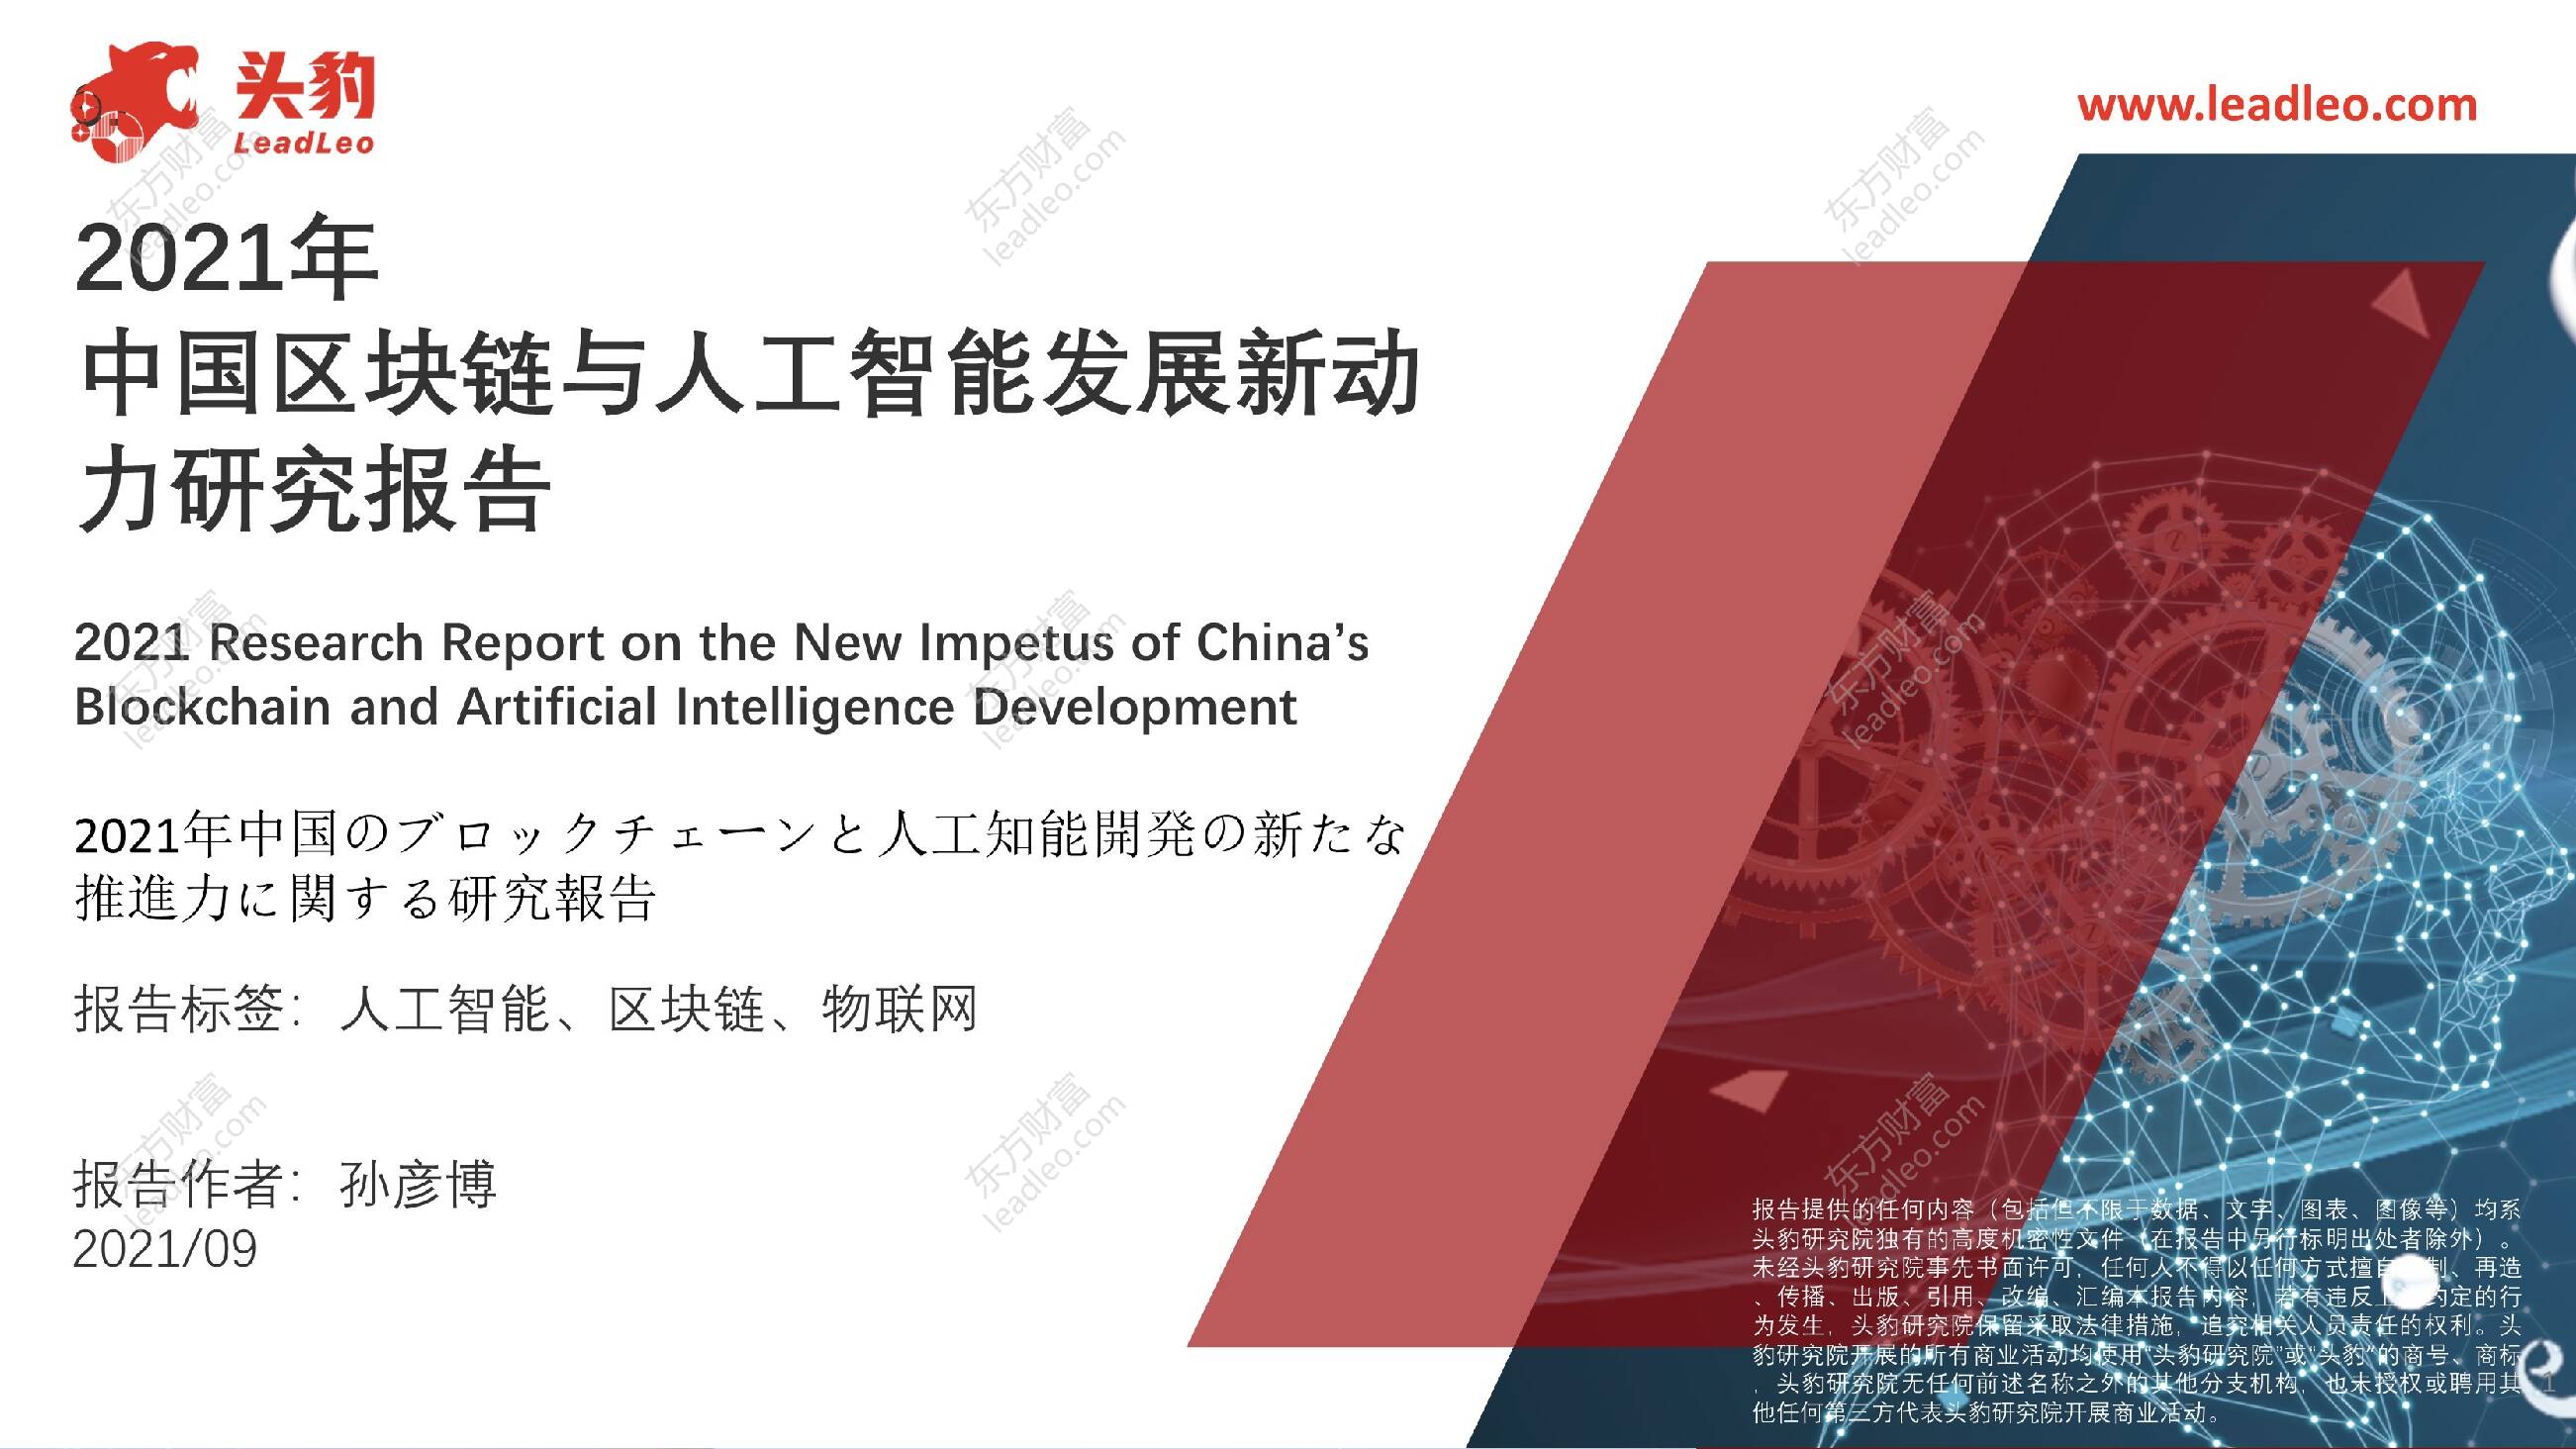 2021年中国区块链与人工智能发展新动力研究报告 头豹研究院 2021-10-11